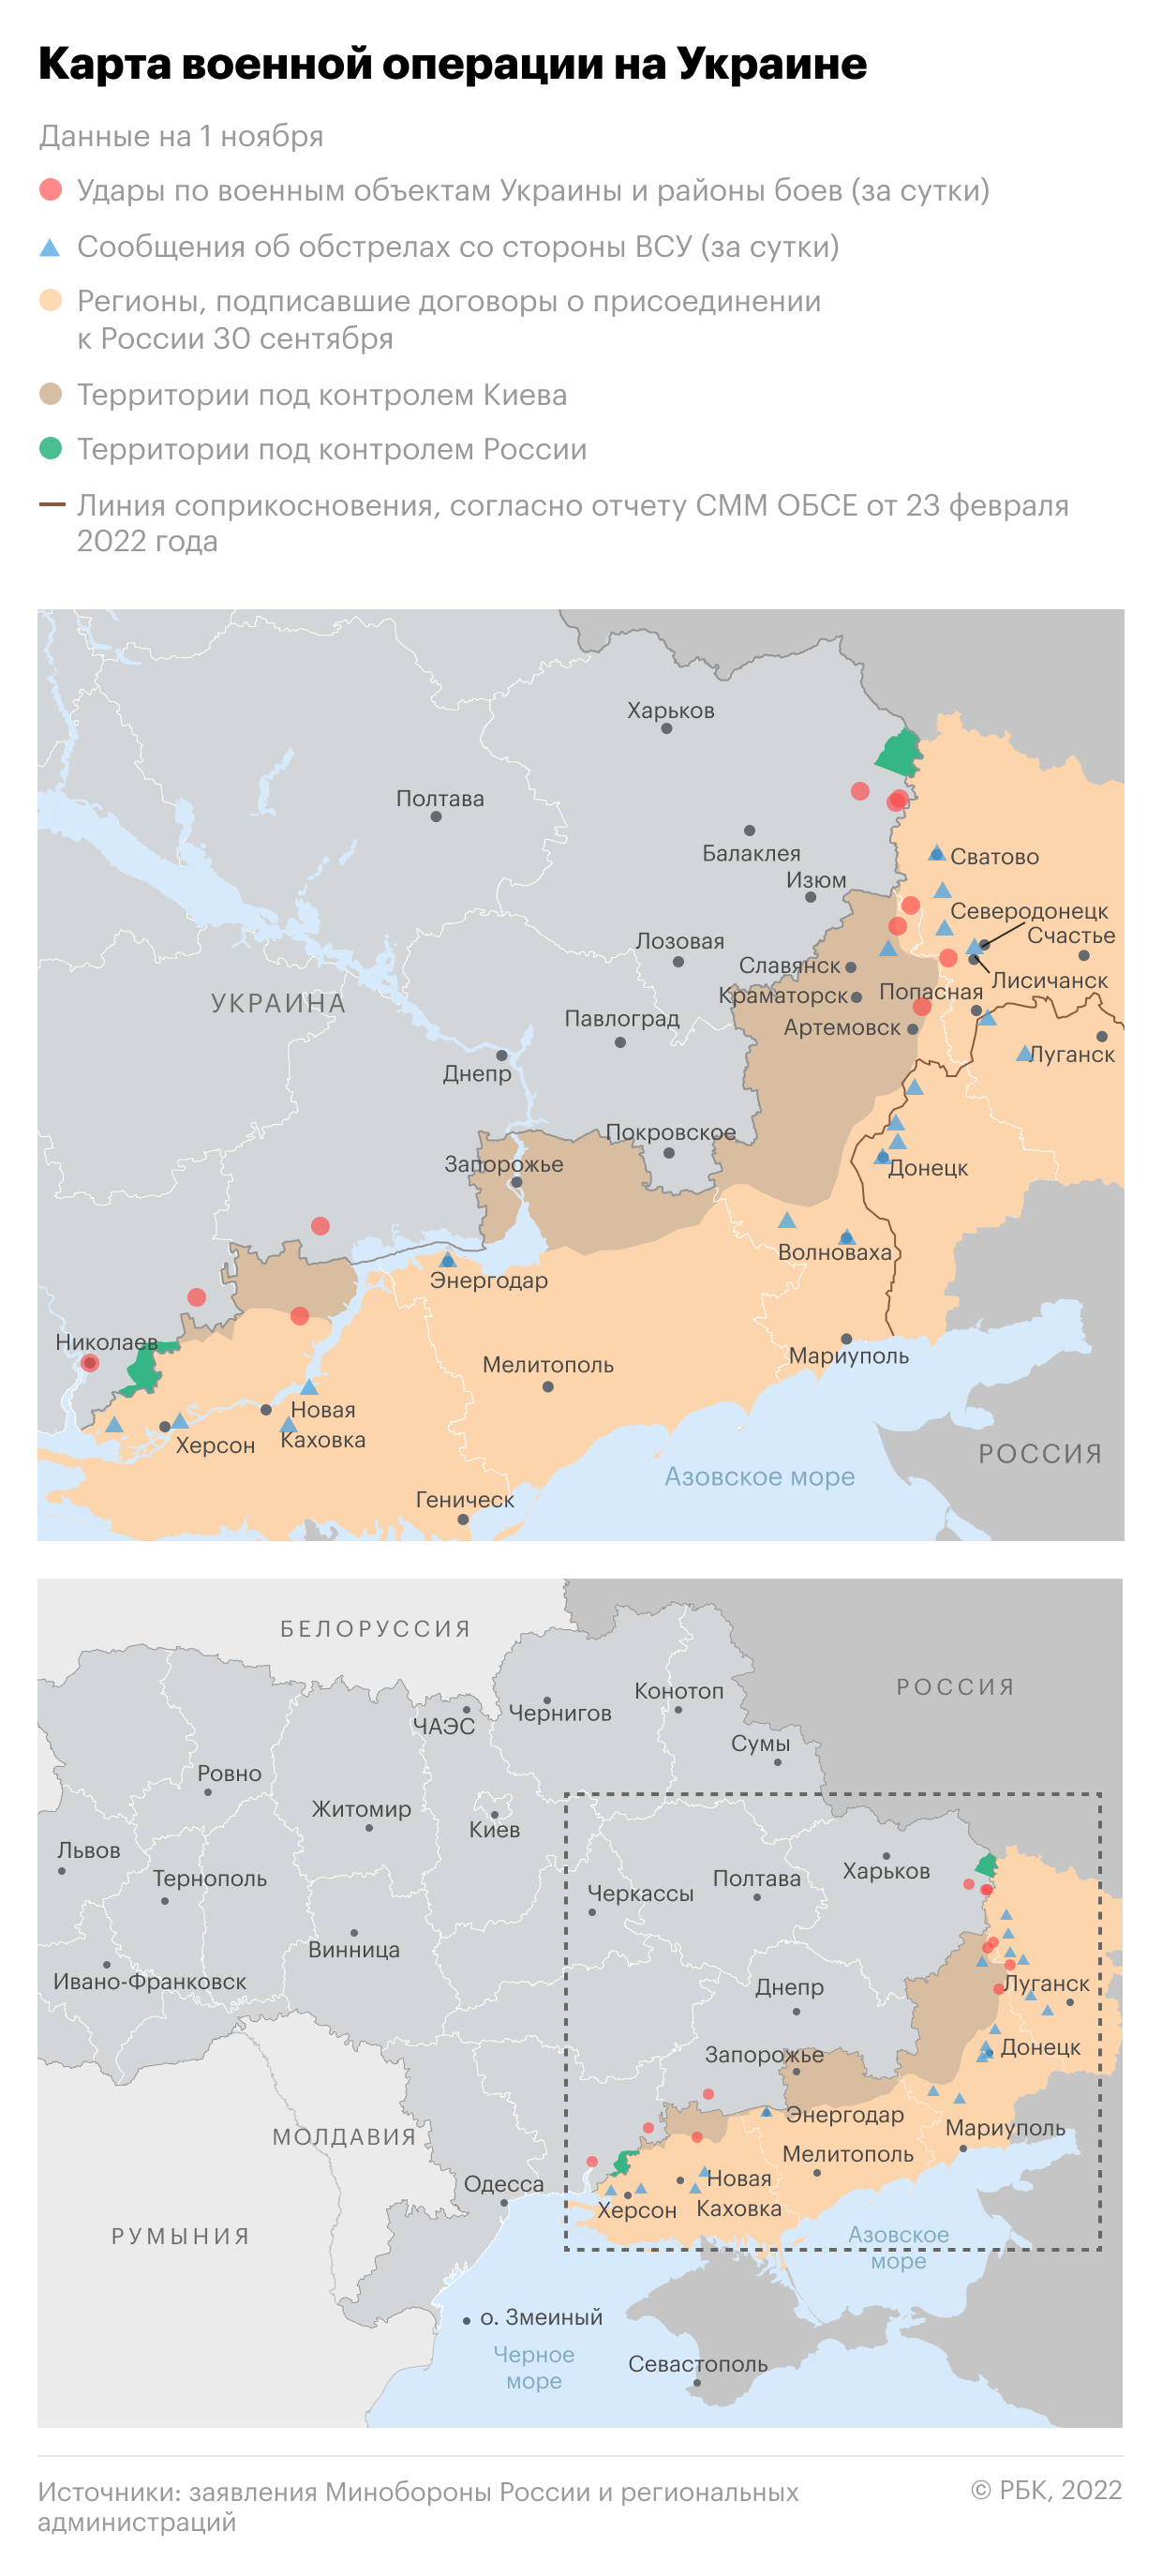 Воздушную тревогу объявили в центральных и южных областях Украины"/>













